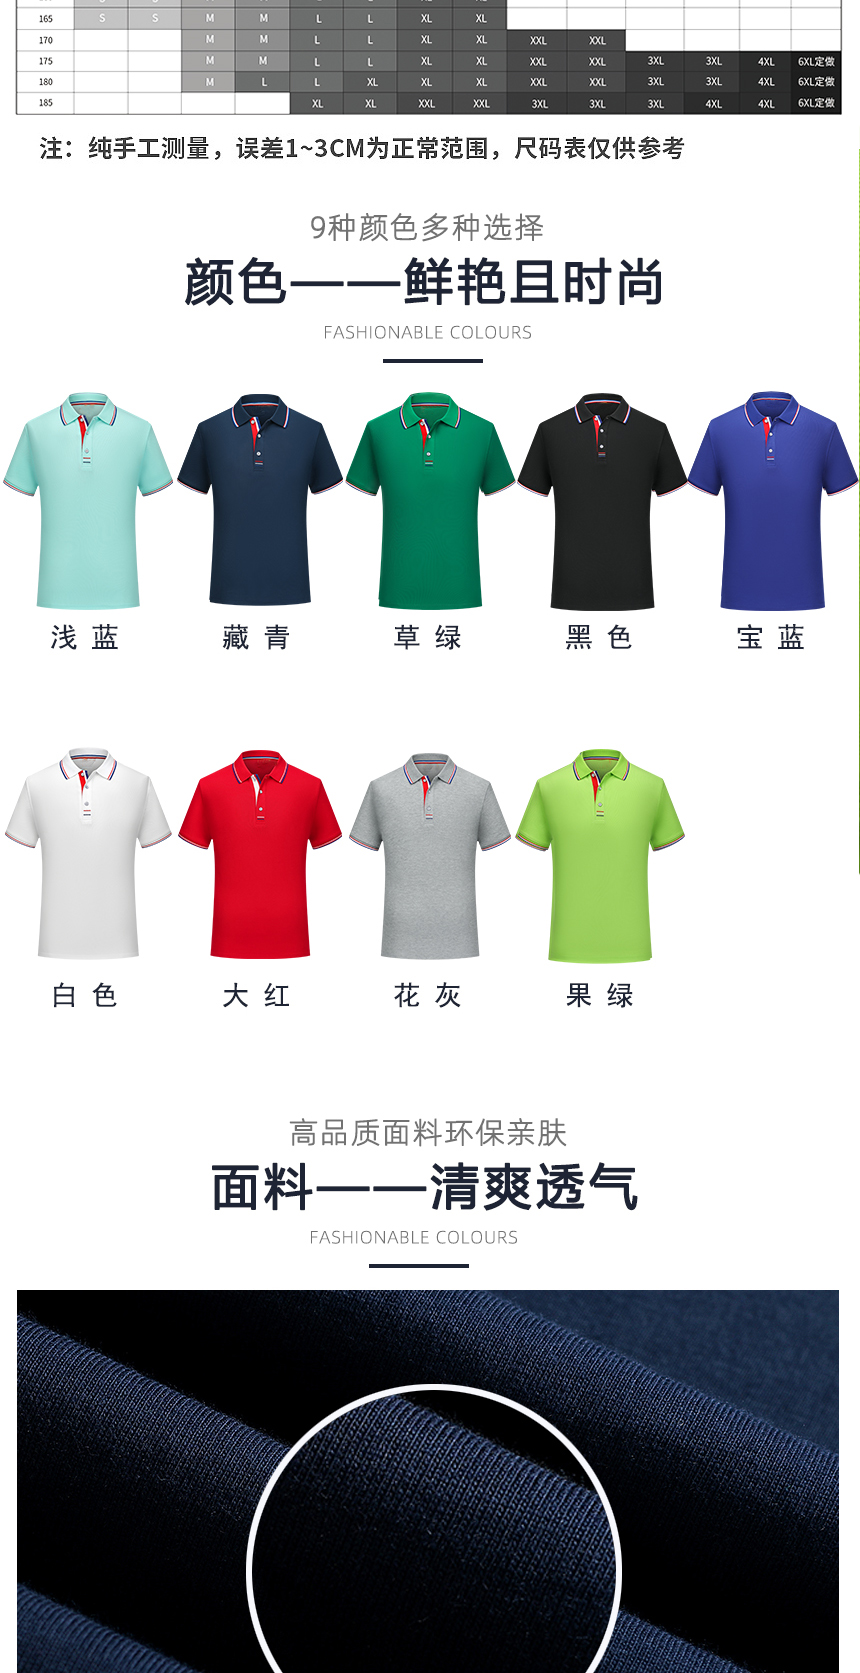 纯棉文化衫同款不同颜色款式展示，纯棉文化衫精选优质面料